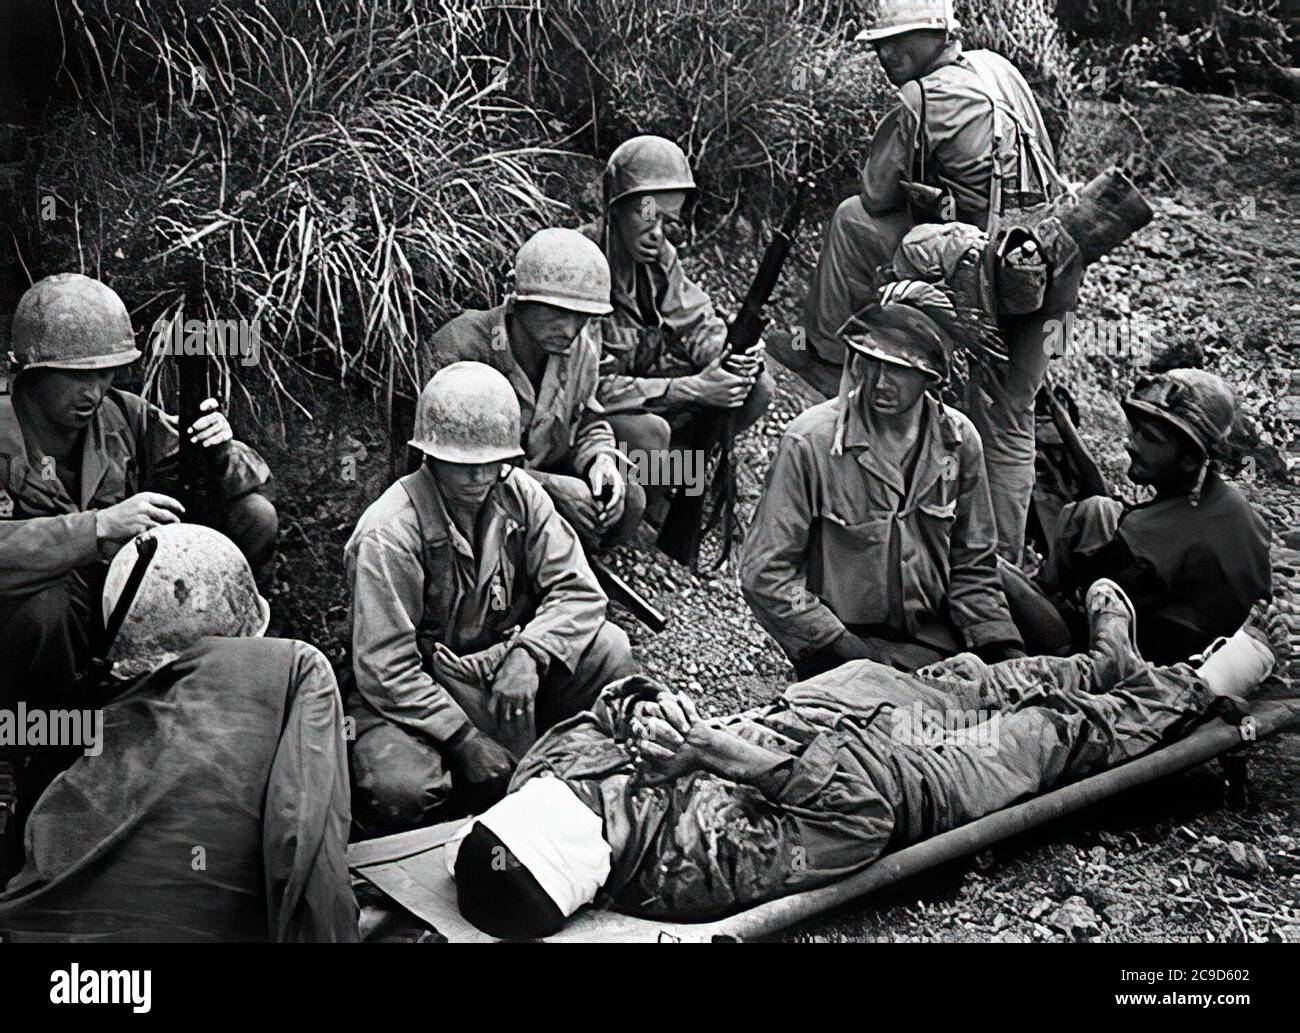 Die blutige und lange Schlacht von OKINAWA in Japan im Jahr 1945. Die Schlacht war eine der blutigsten im PazifikDie blutige und lange Schlacht von OKINAWA in Japan im Jahr 1945. Die Schlacht war eine der blutigsten im Pazifik Stockfoto